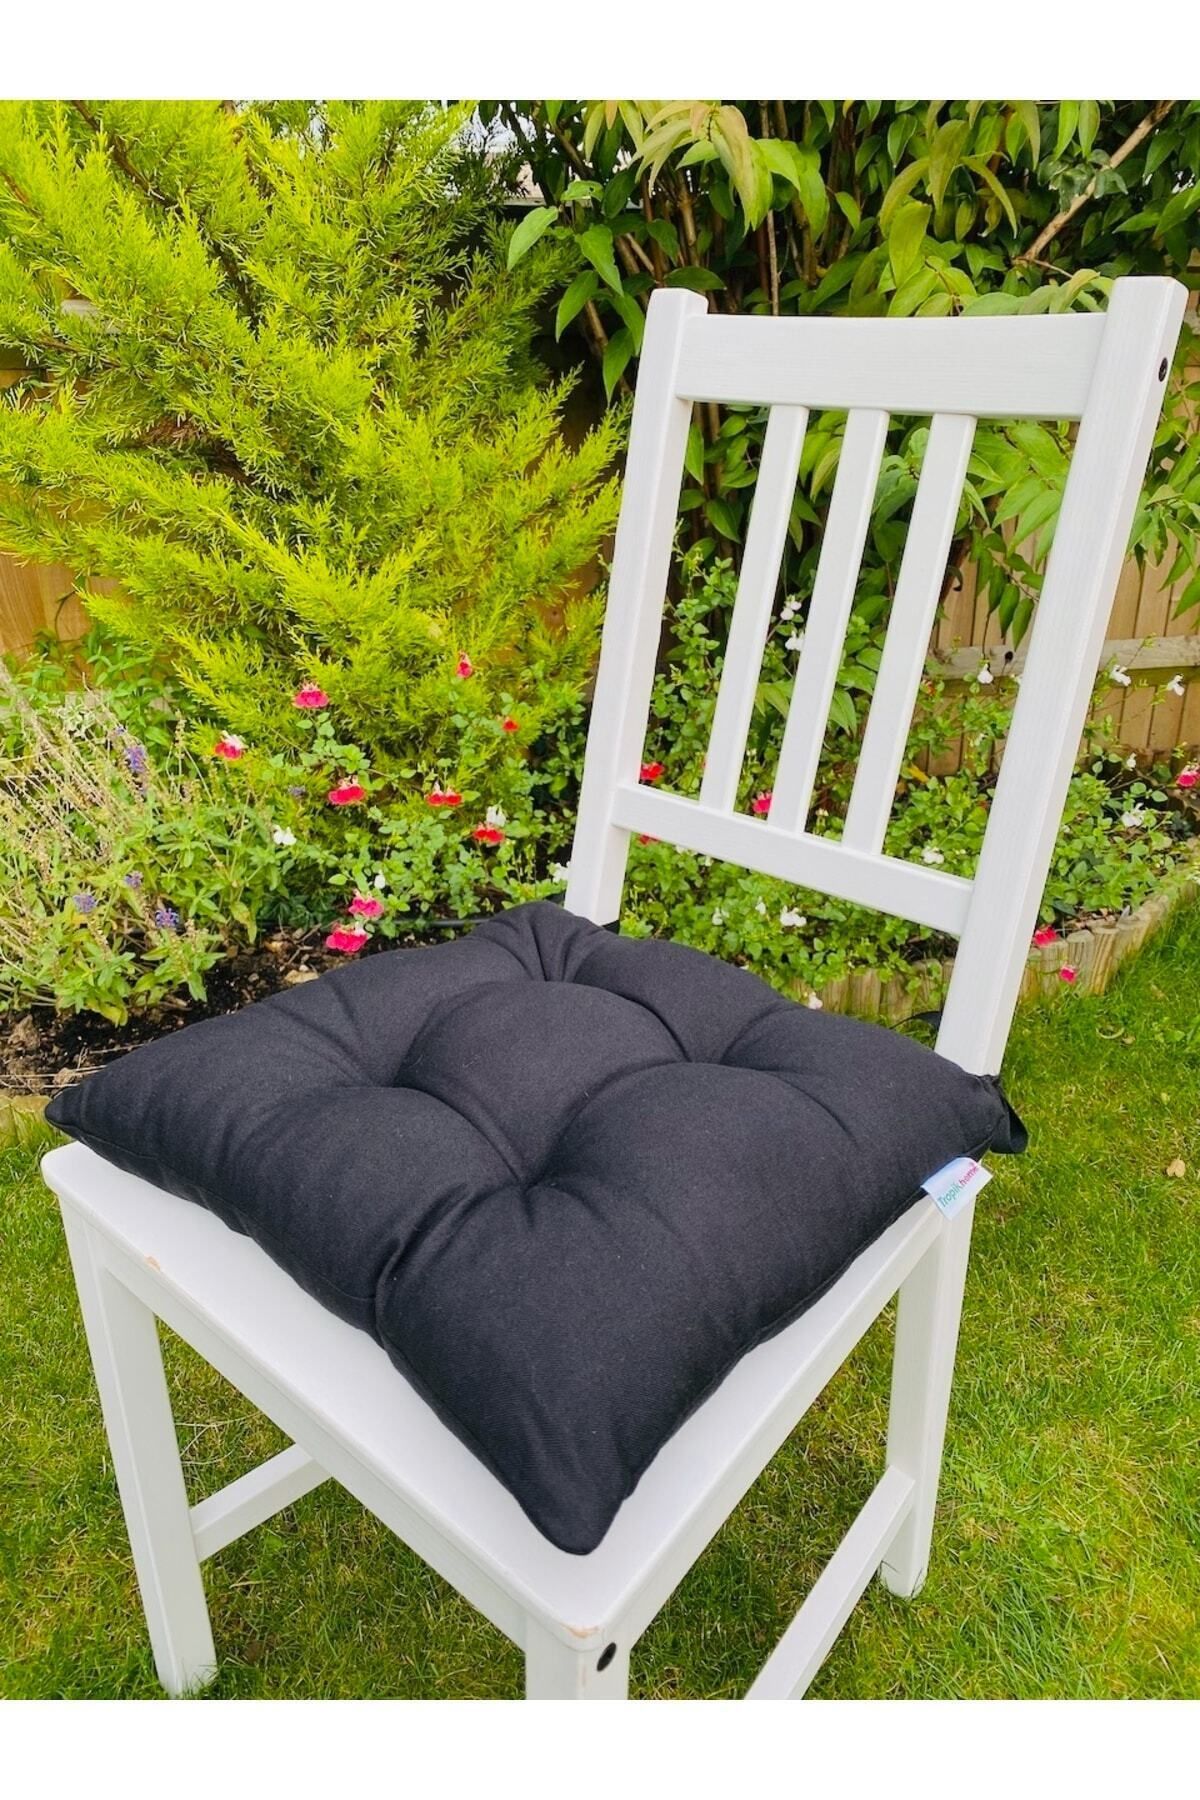 Tropikhome Siyah Sandalye Minderi, Pamuklu Kumaş Pofidik Kare Dekoratif Sandalye Sırt Minderi 40x40 Cm